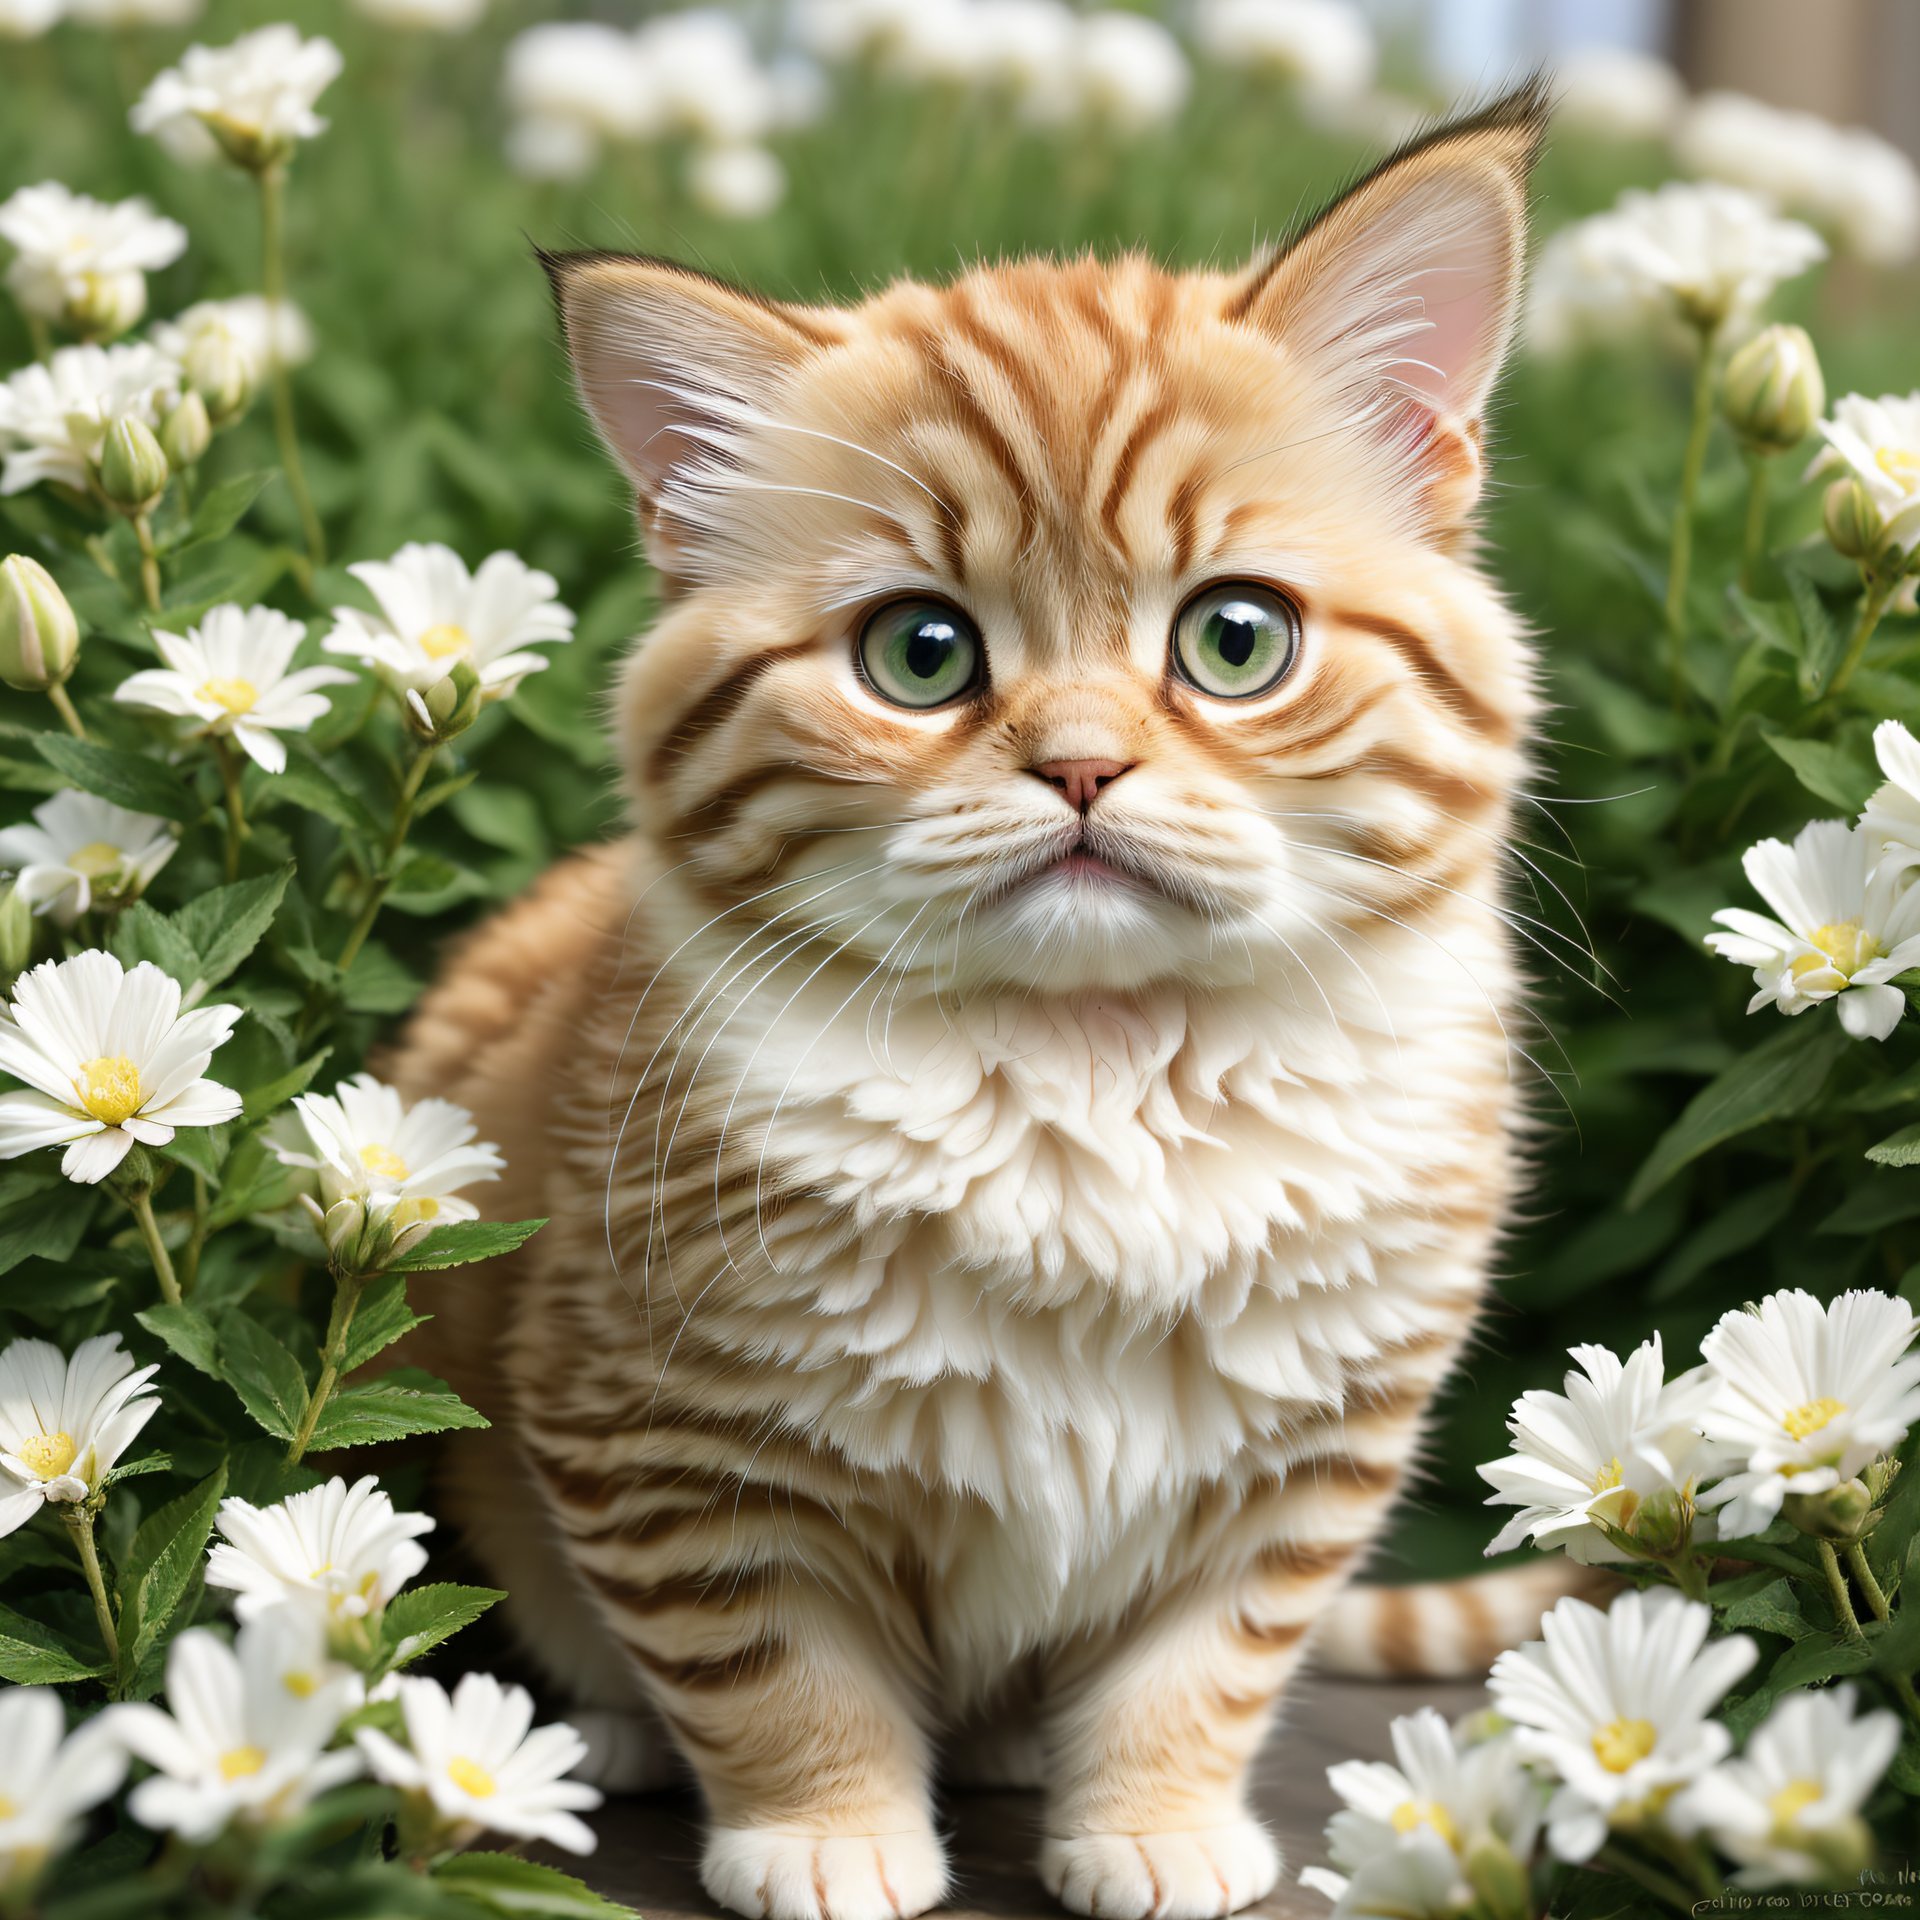 A kitten in white flowers